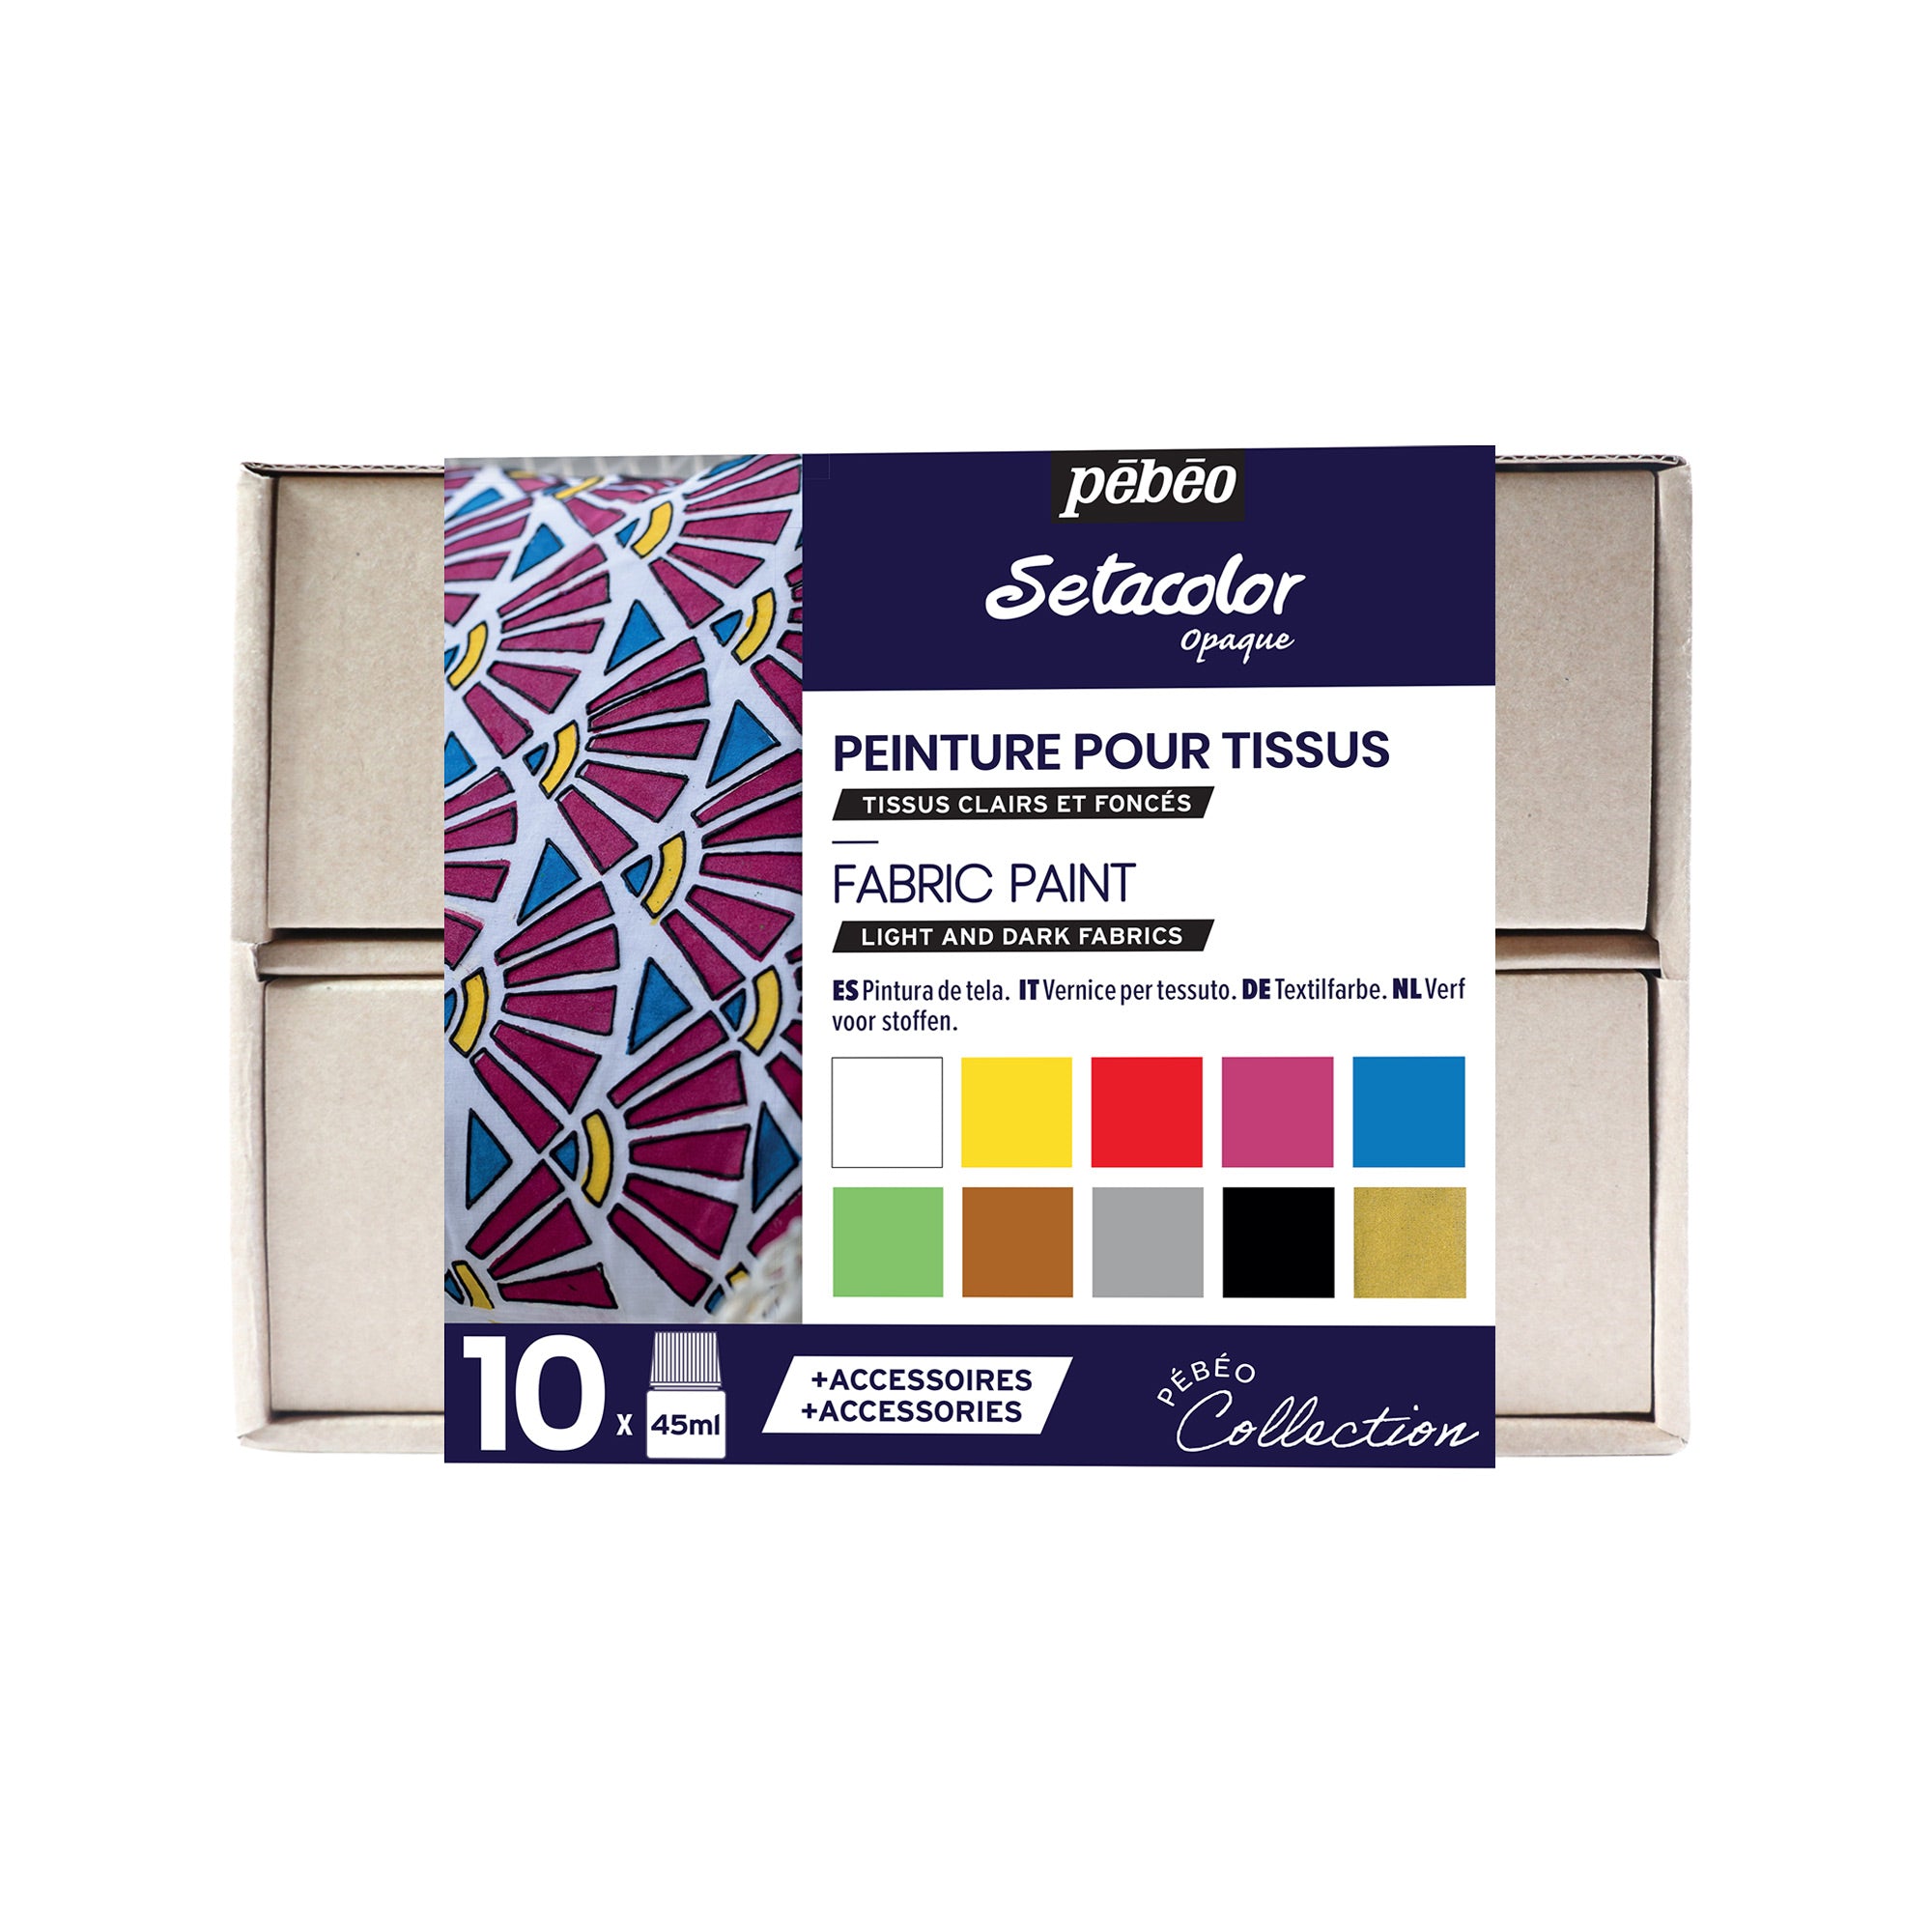 Pebeo SETACOLOR GLITTER Permanent Fabric Paint Assorted Colour Set 10 X  45ml 